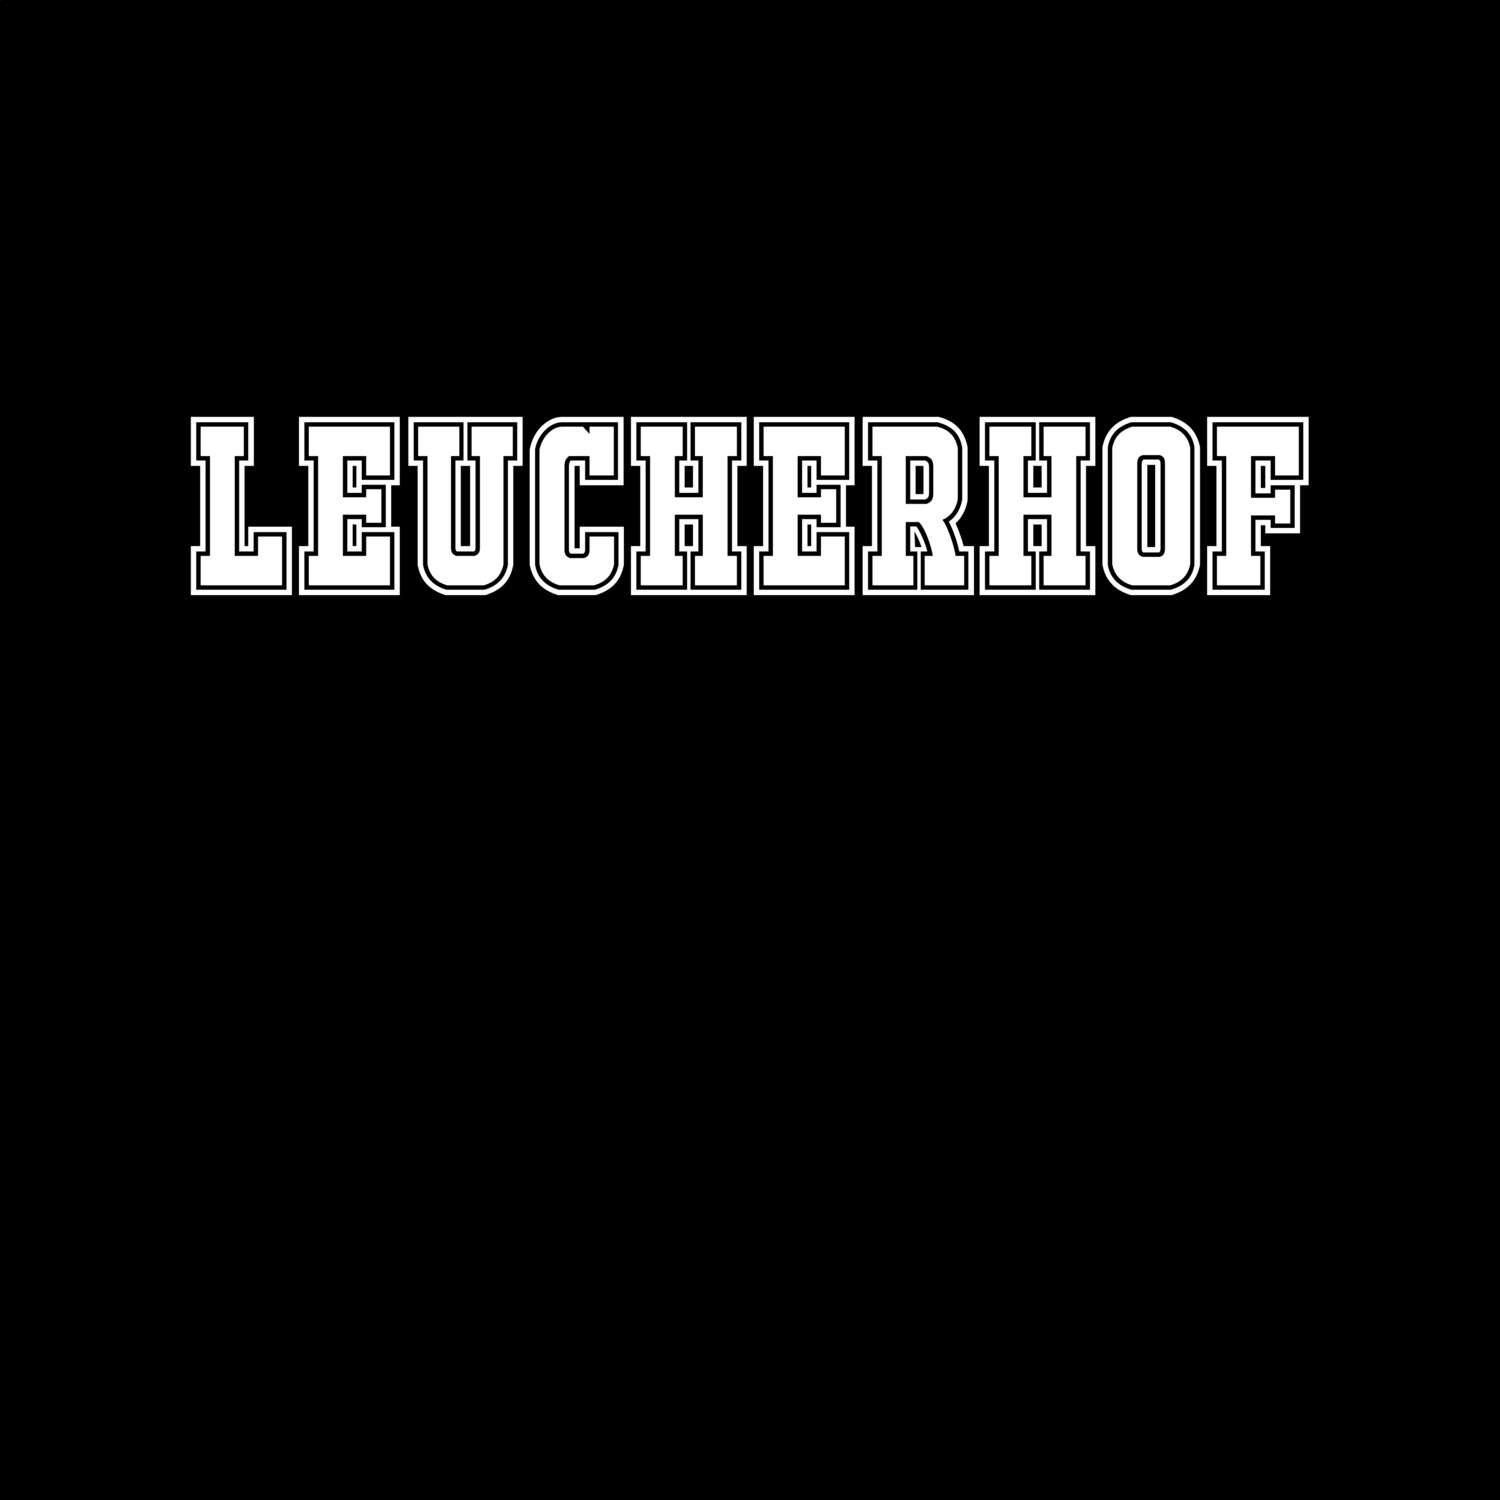 Leucherhof T-Shirt »Classic«